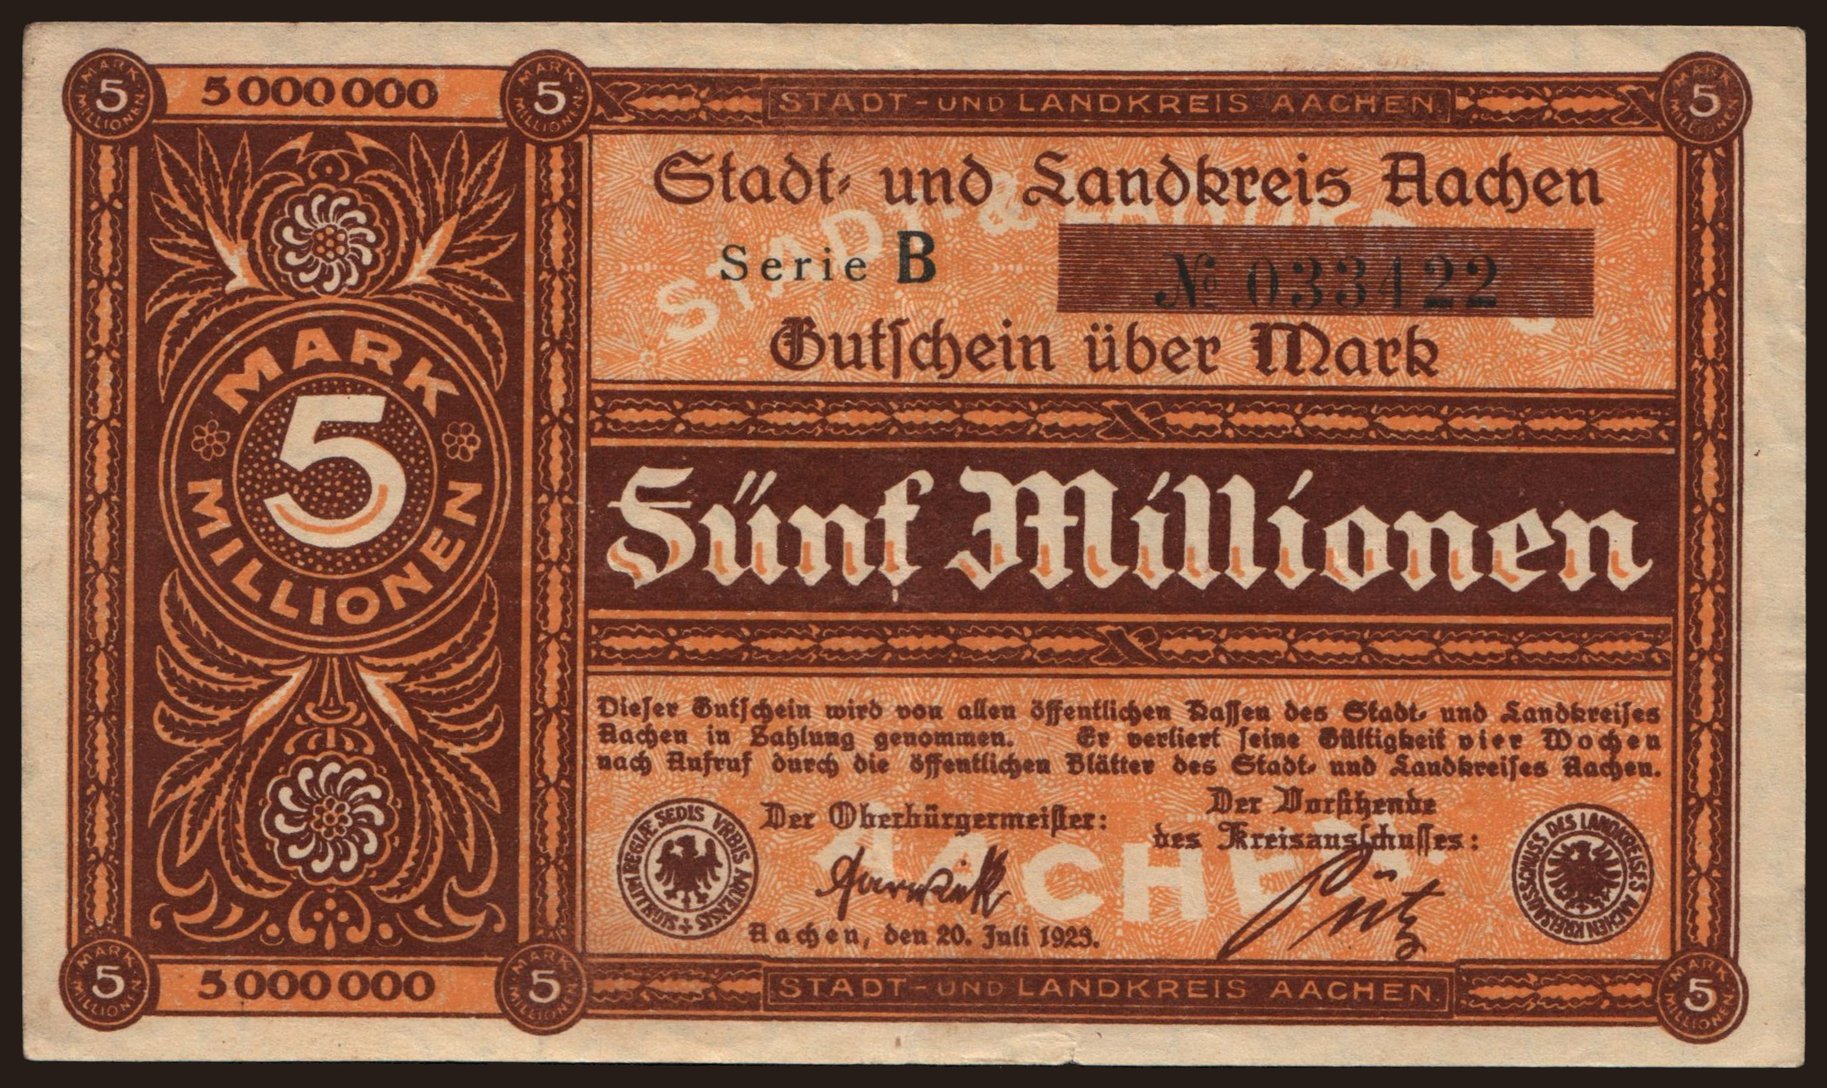 Aachen/ Stadt- und Landkreis, 5.000.000 Mark, 1923